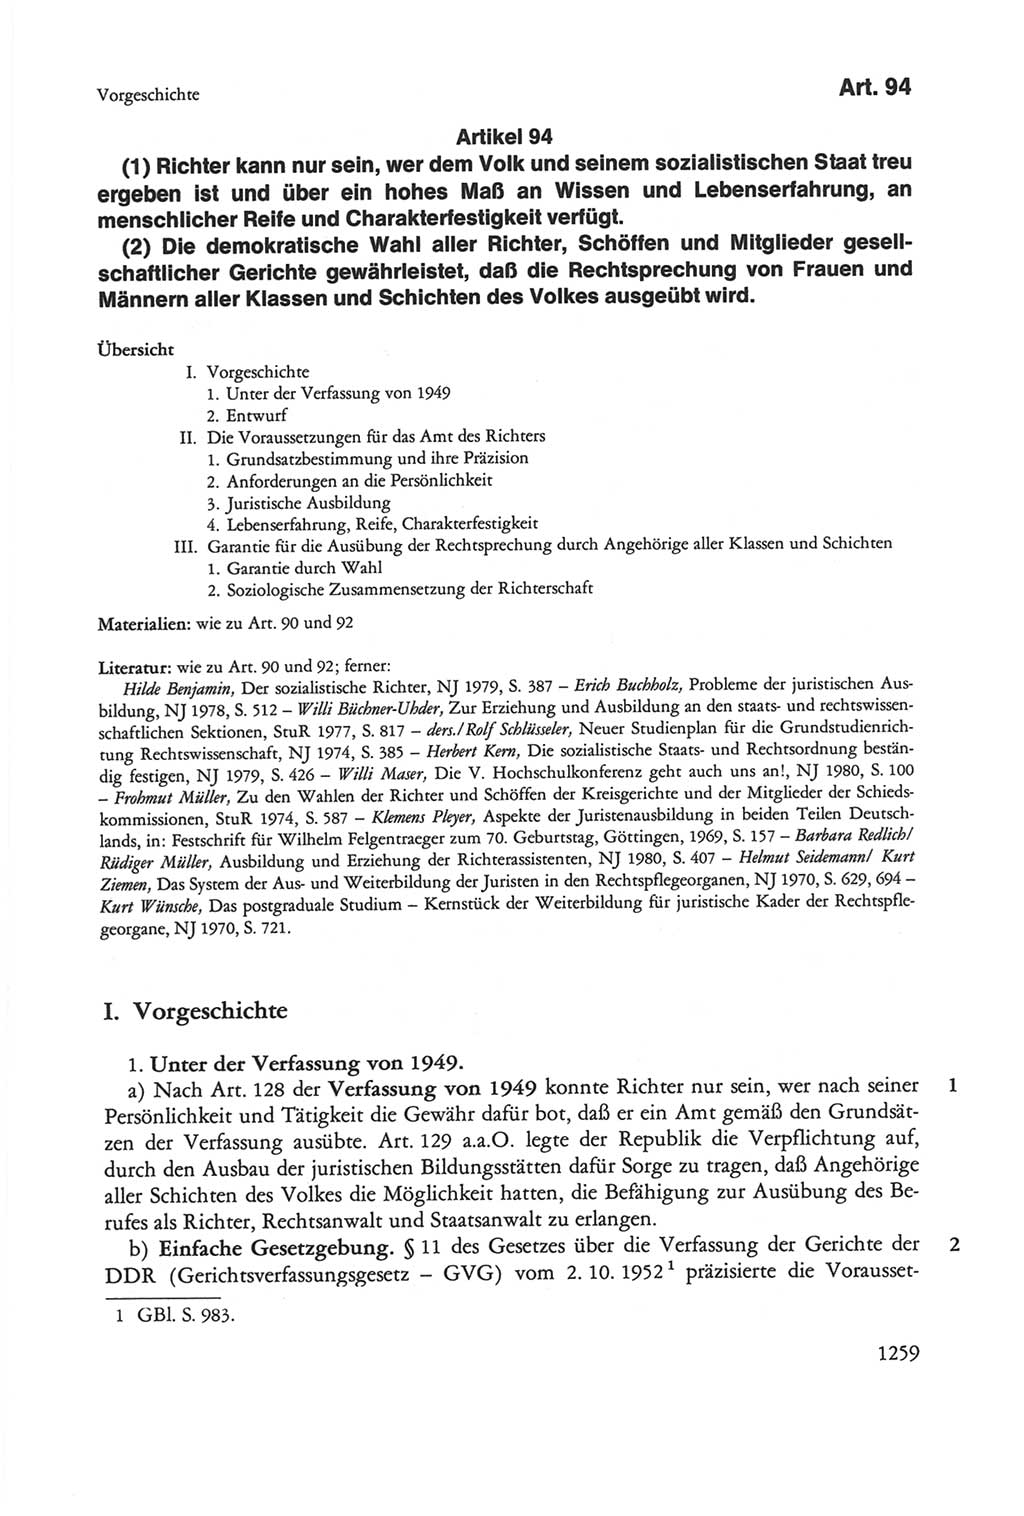 Die sozialistische Verfassung der Deutschen Demokratischen Republik (DDR), Kommentar 1982, Seite 1259 (Soz. Verf. DDR Komm. 1982, S. 1259)